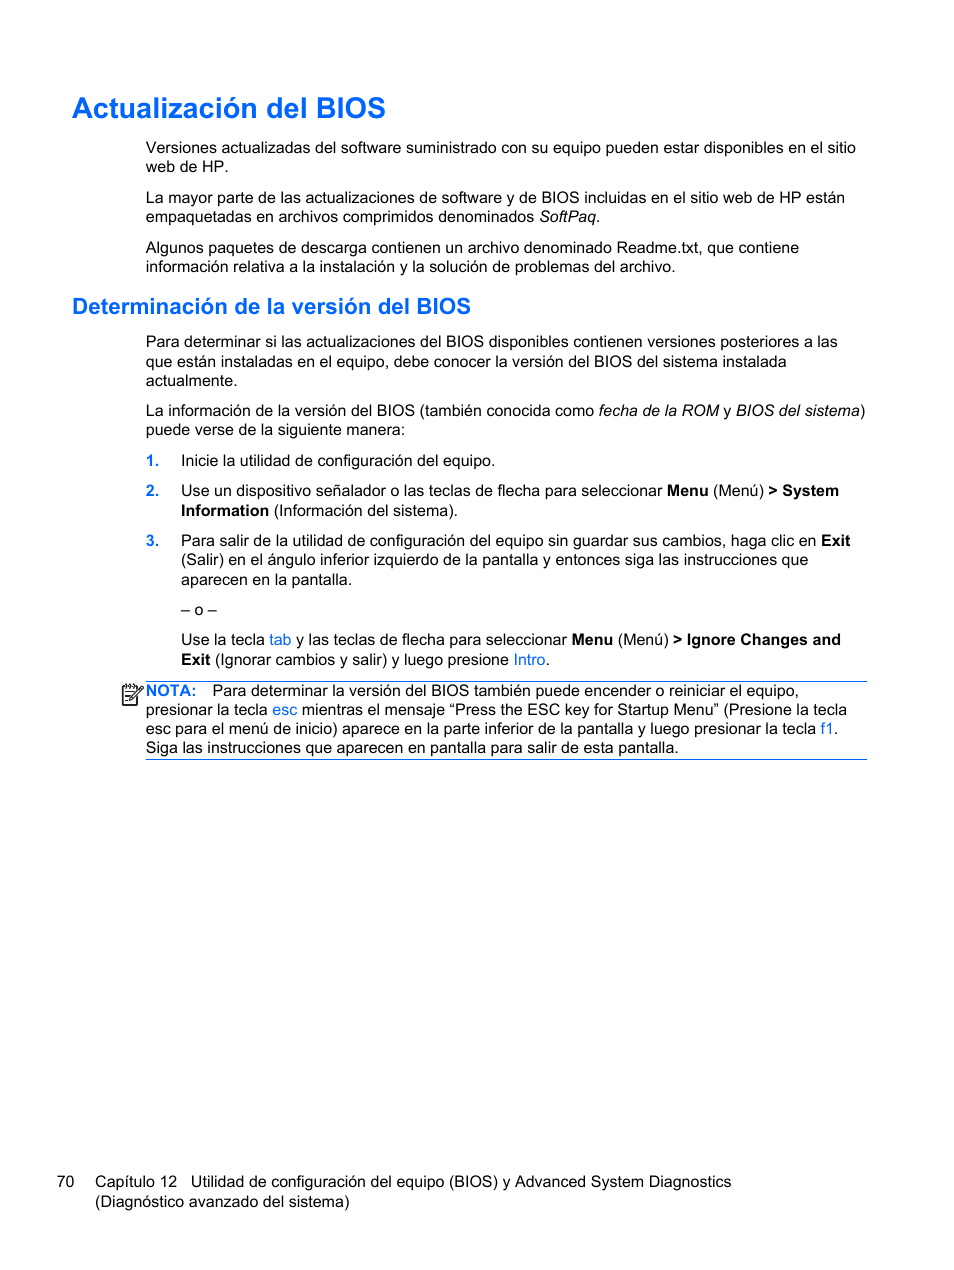 Actualización del bios, Determinación de la versión del bios | HP PC Notebook HP EliteBook 840 G1 Manual del usuario | Página 80 / 96